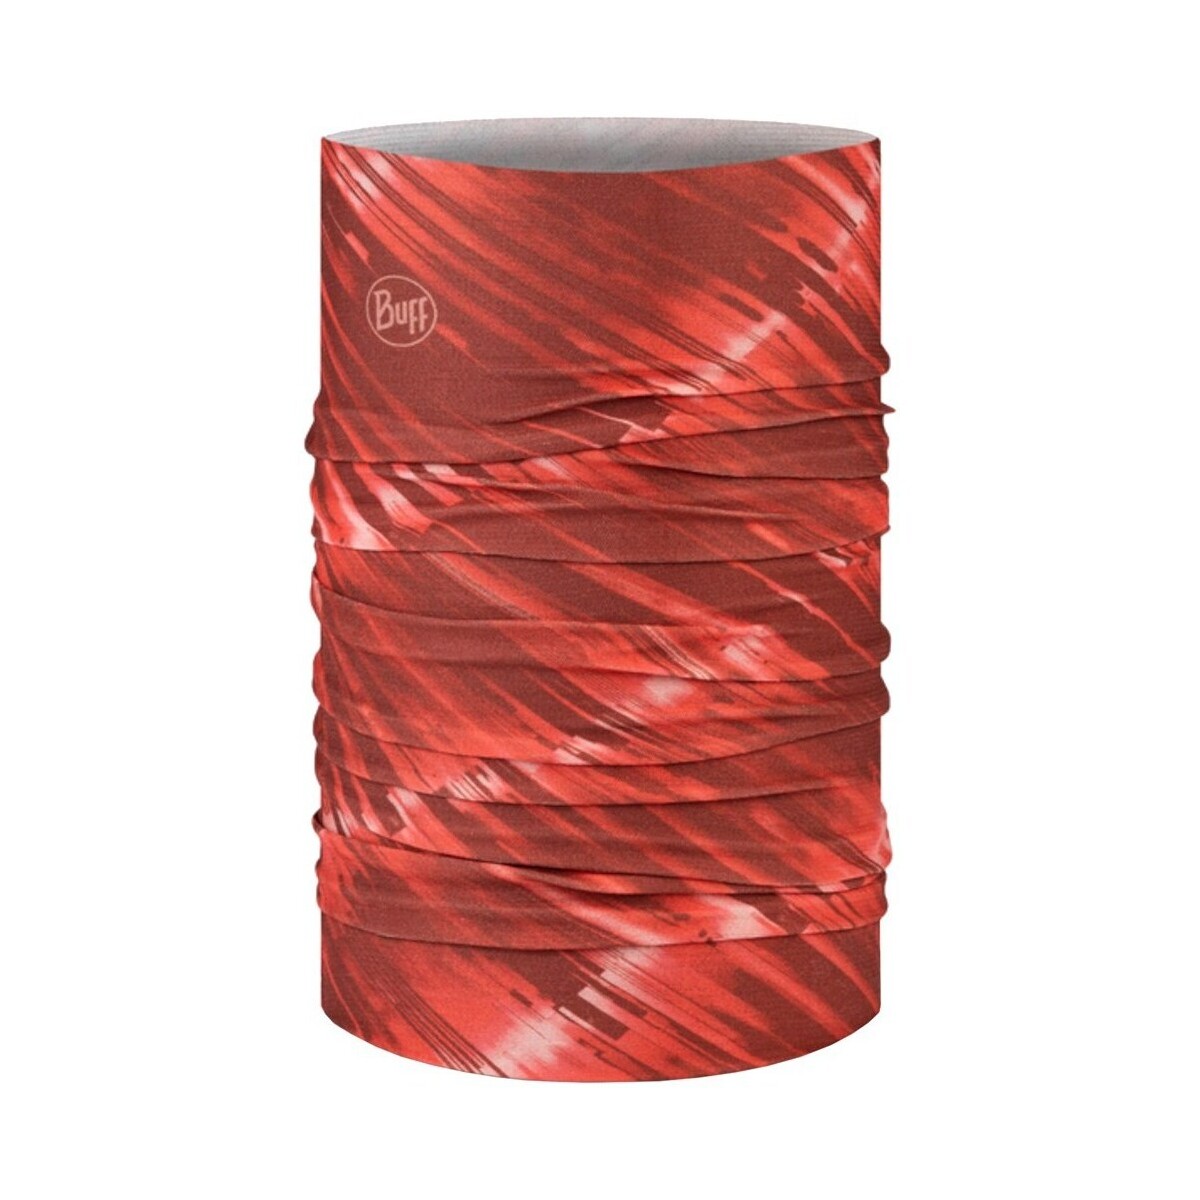 Accessoires textile Echarpes / Etoles / Foulards Buff Coolnet UV Rouge